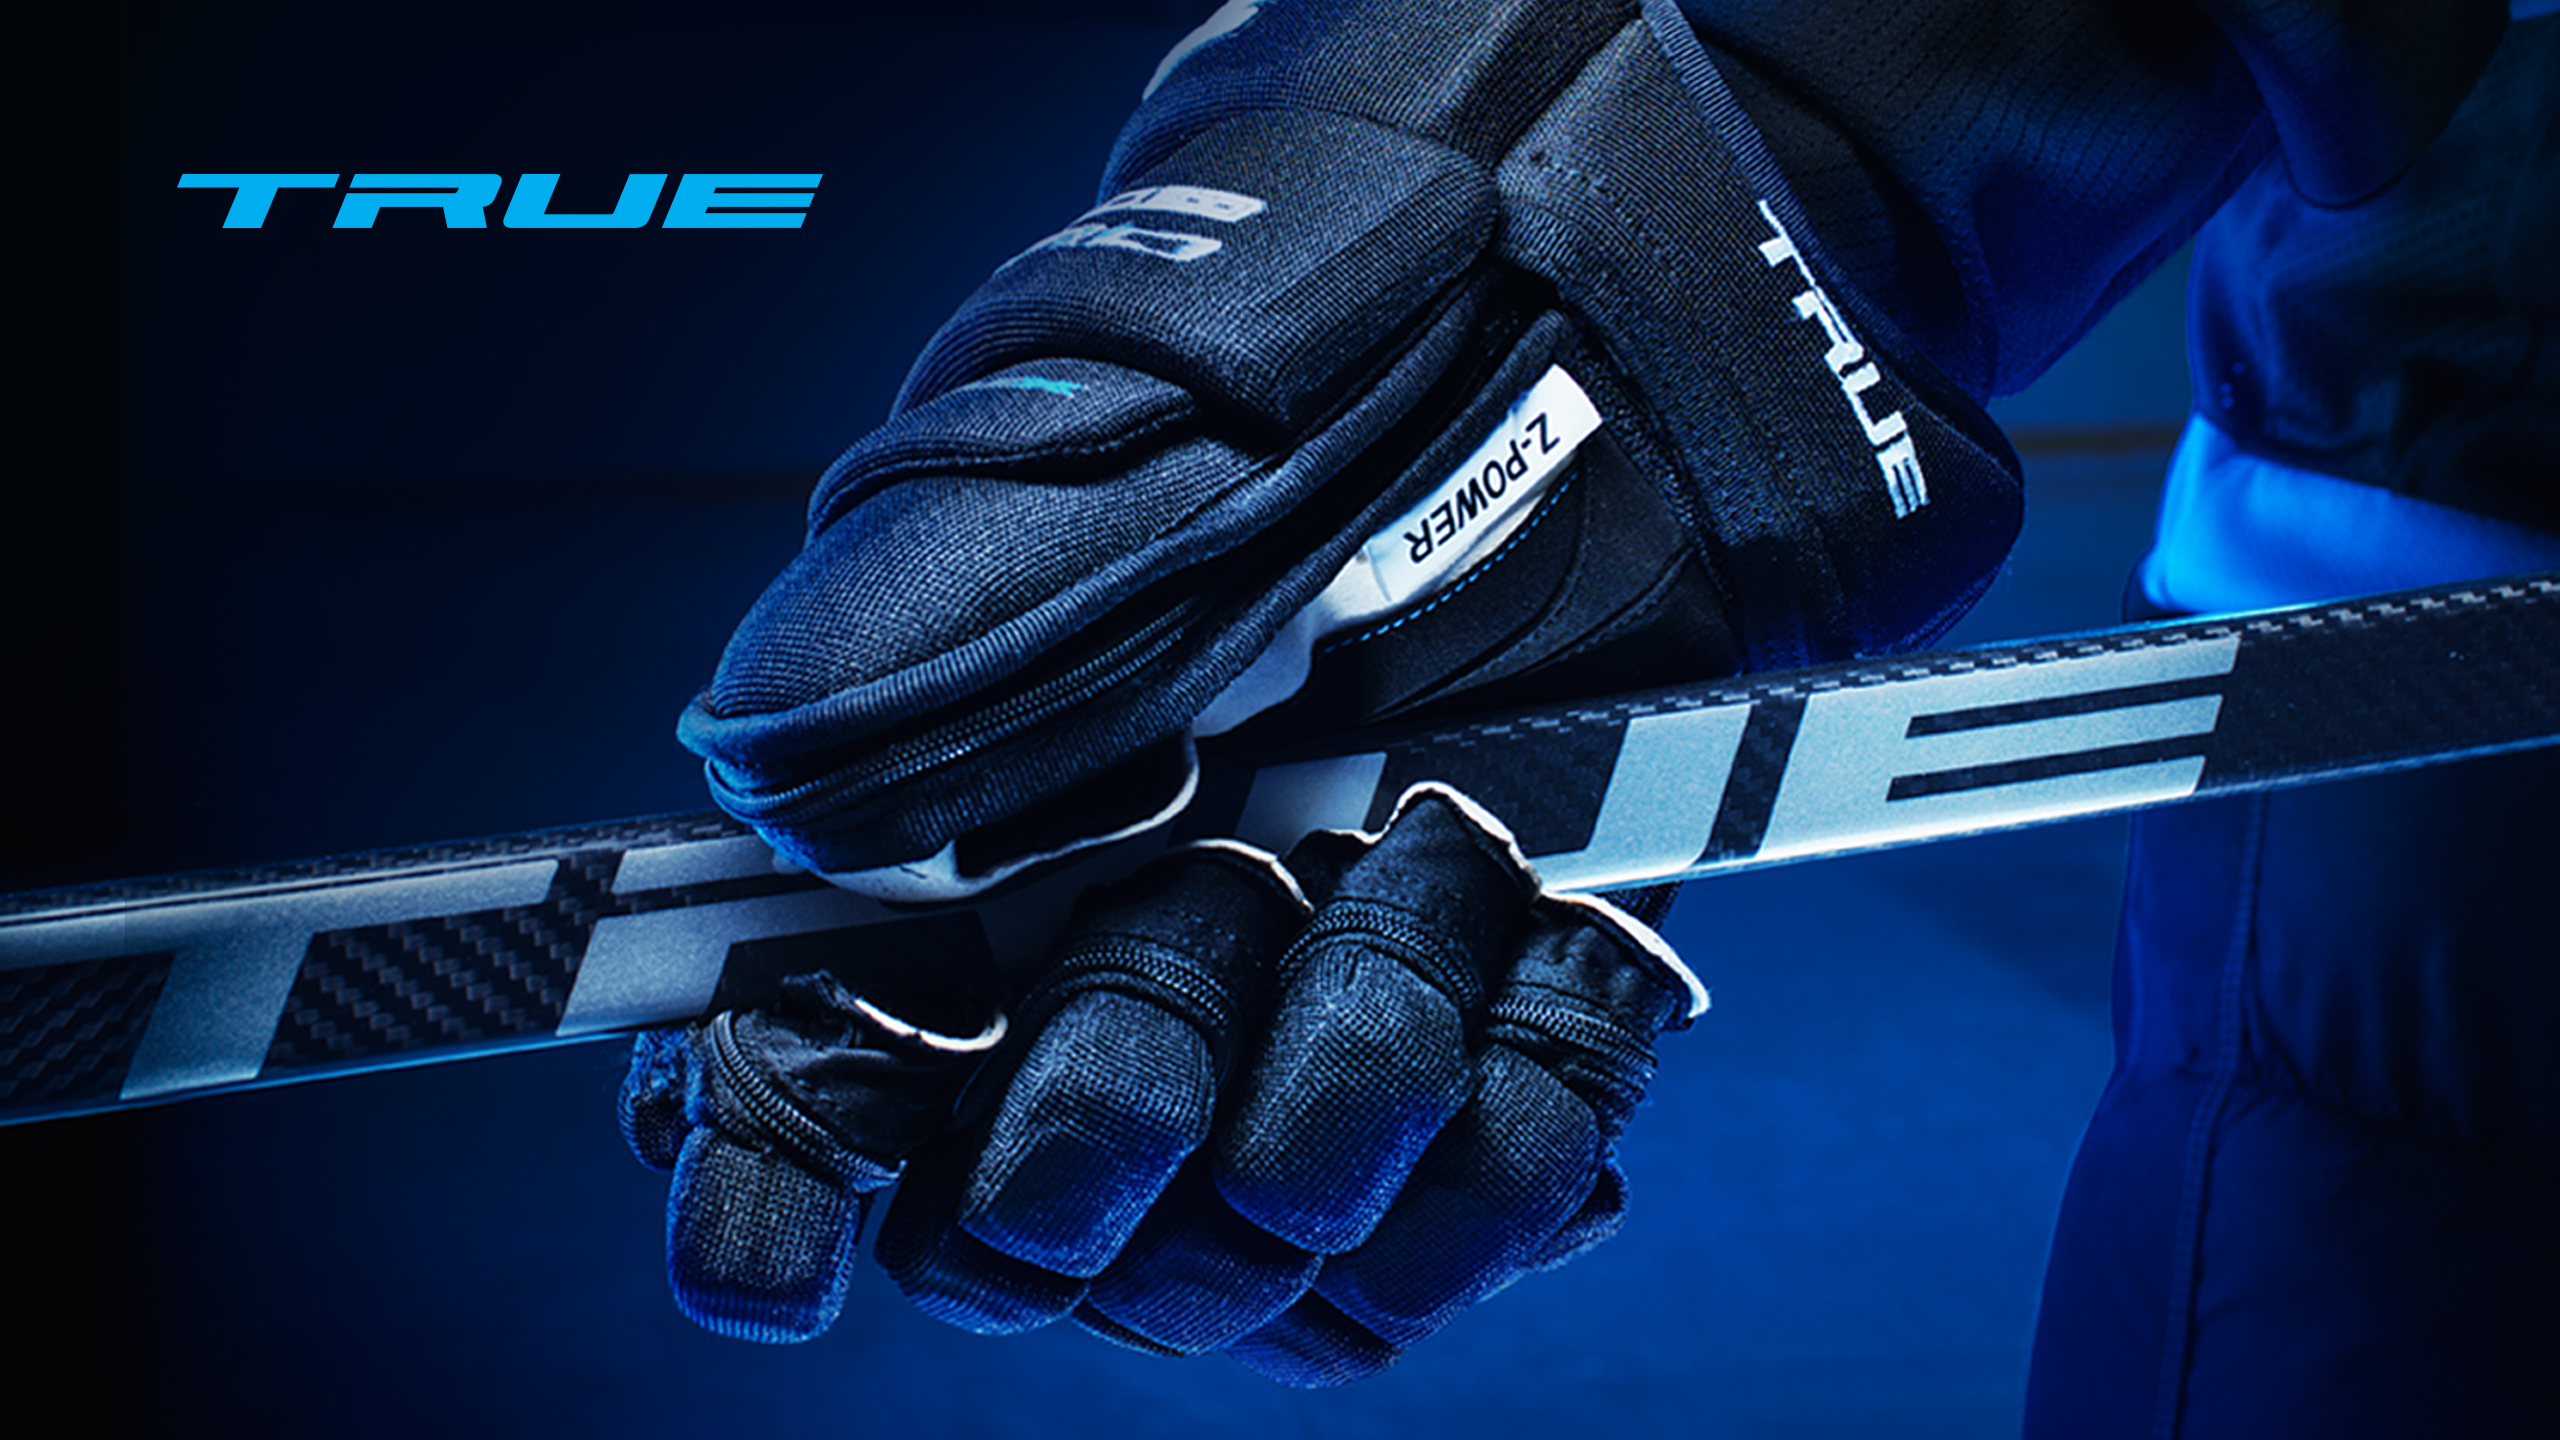 True Xc9 Hockey Gloves - HD Wallpaper 